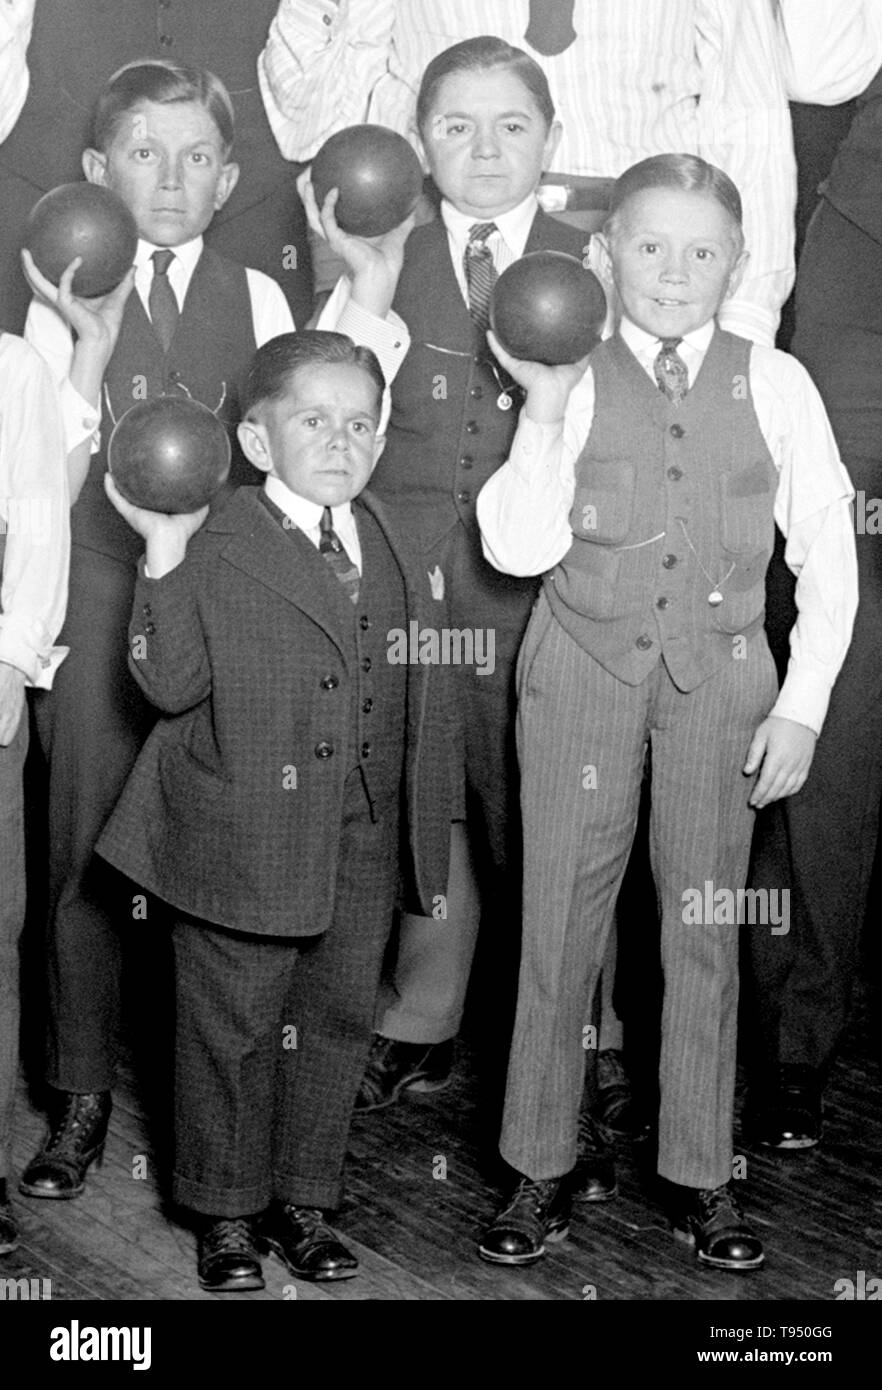 Titolo: "inger Midgets del bowling al YMCA.' cantante del Midgets erano un popolare gruppo vaudeville nella prima metà del XX secolo. Leopold von cantante (3 maggio 1877 - 5 Marzo 1951) Formato del cantante Midgets nel 1912-13, e costruito la Liliputstadt, una 'midget citta' al 'Venezia in Vienna " Amusement Park, dove si sono esibiti. Il Liliputstadt è stata un grande successo e la cantante ha iniziato a essere in tour con i suoi interpreti in tutta Europa e, nel processo, reclutati nuovi membri. Foto Stock